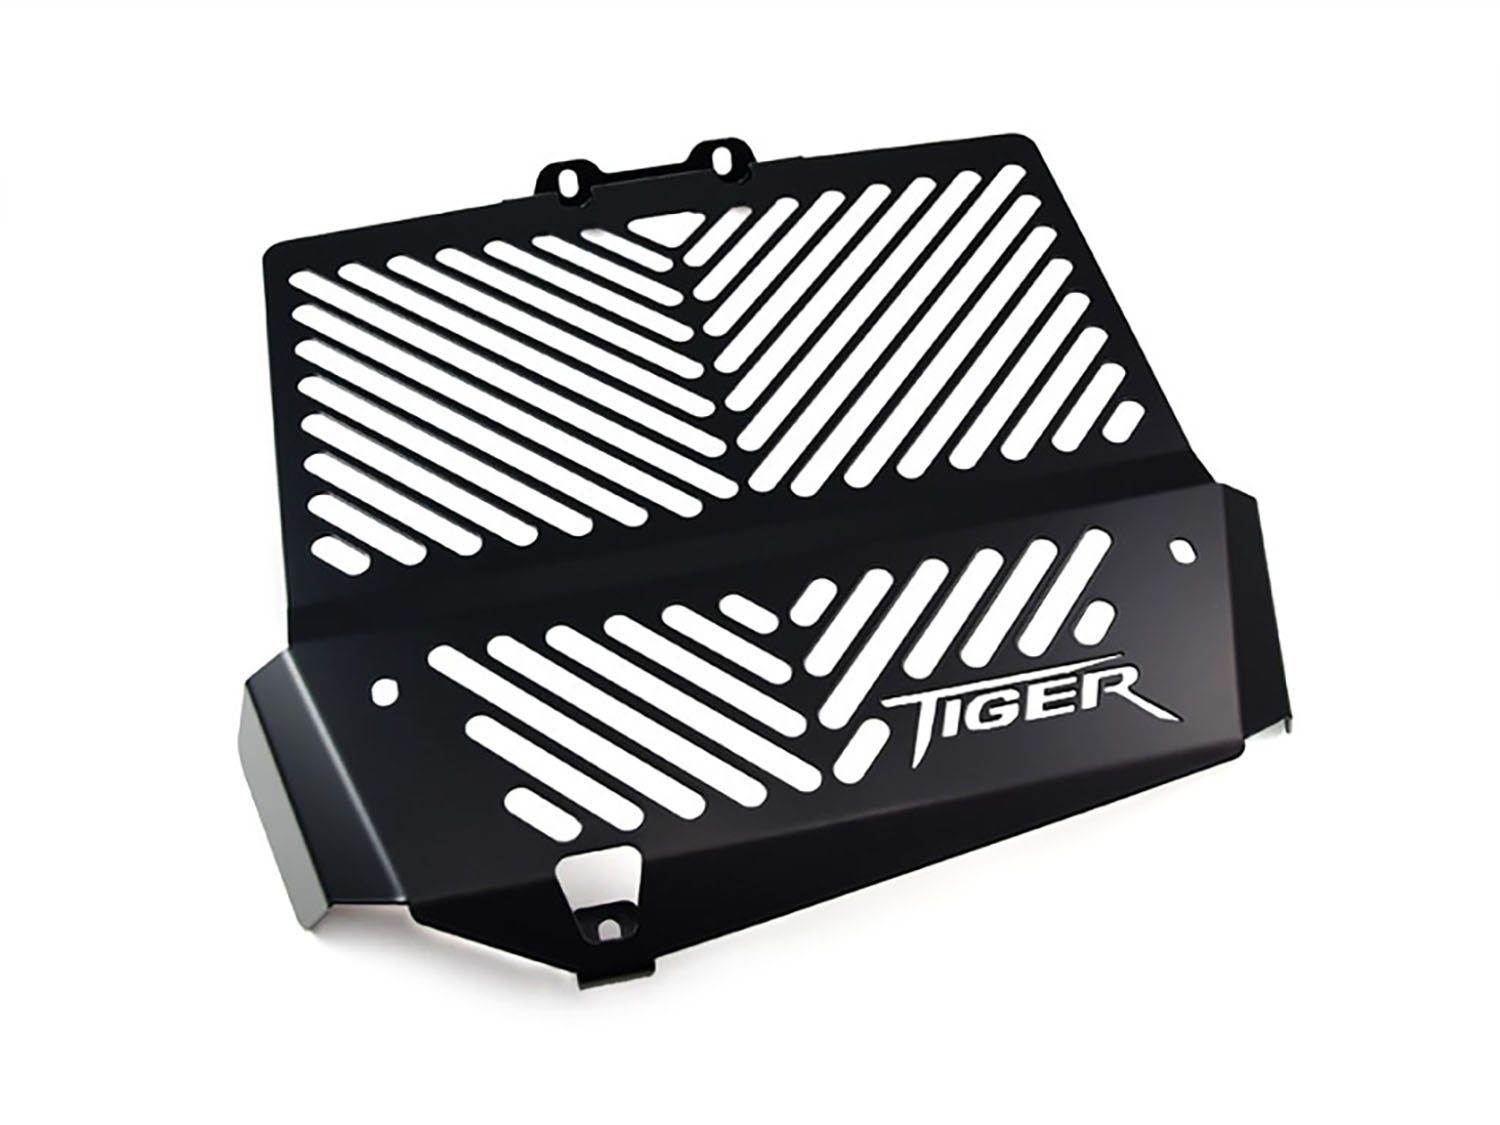 ZIEGER Motorrad-Additiv Kühlerabdeckung für Triumph Tiger 1050 Logo schwarz, Motorradkühlerabdeckung